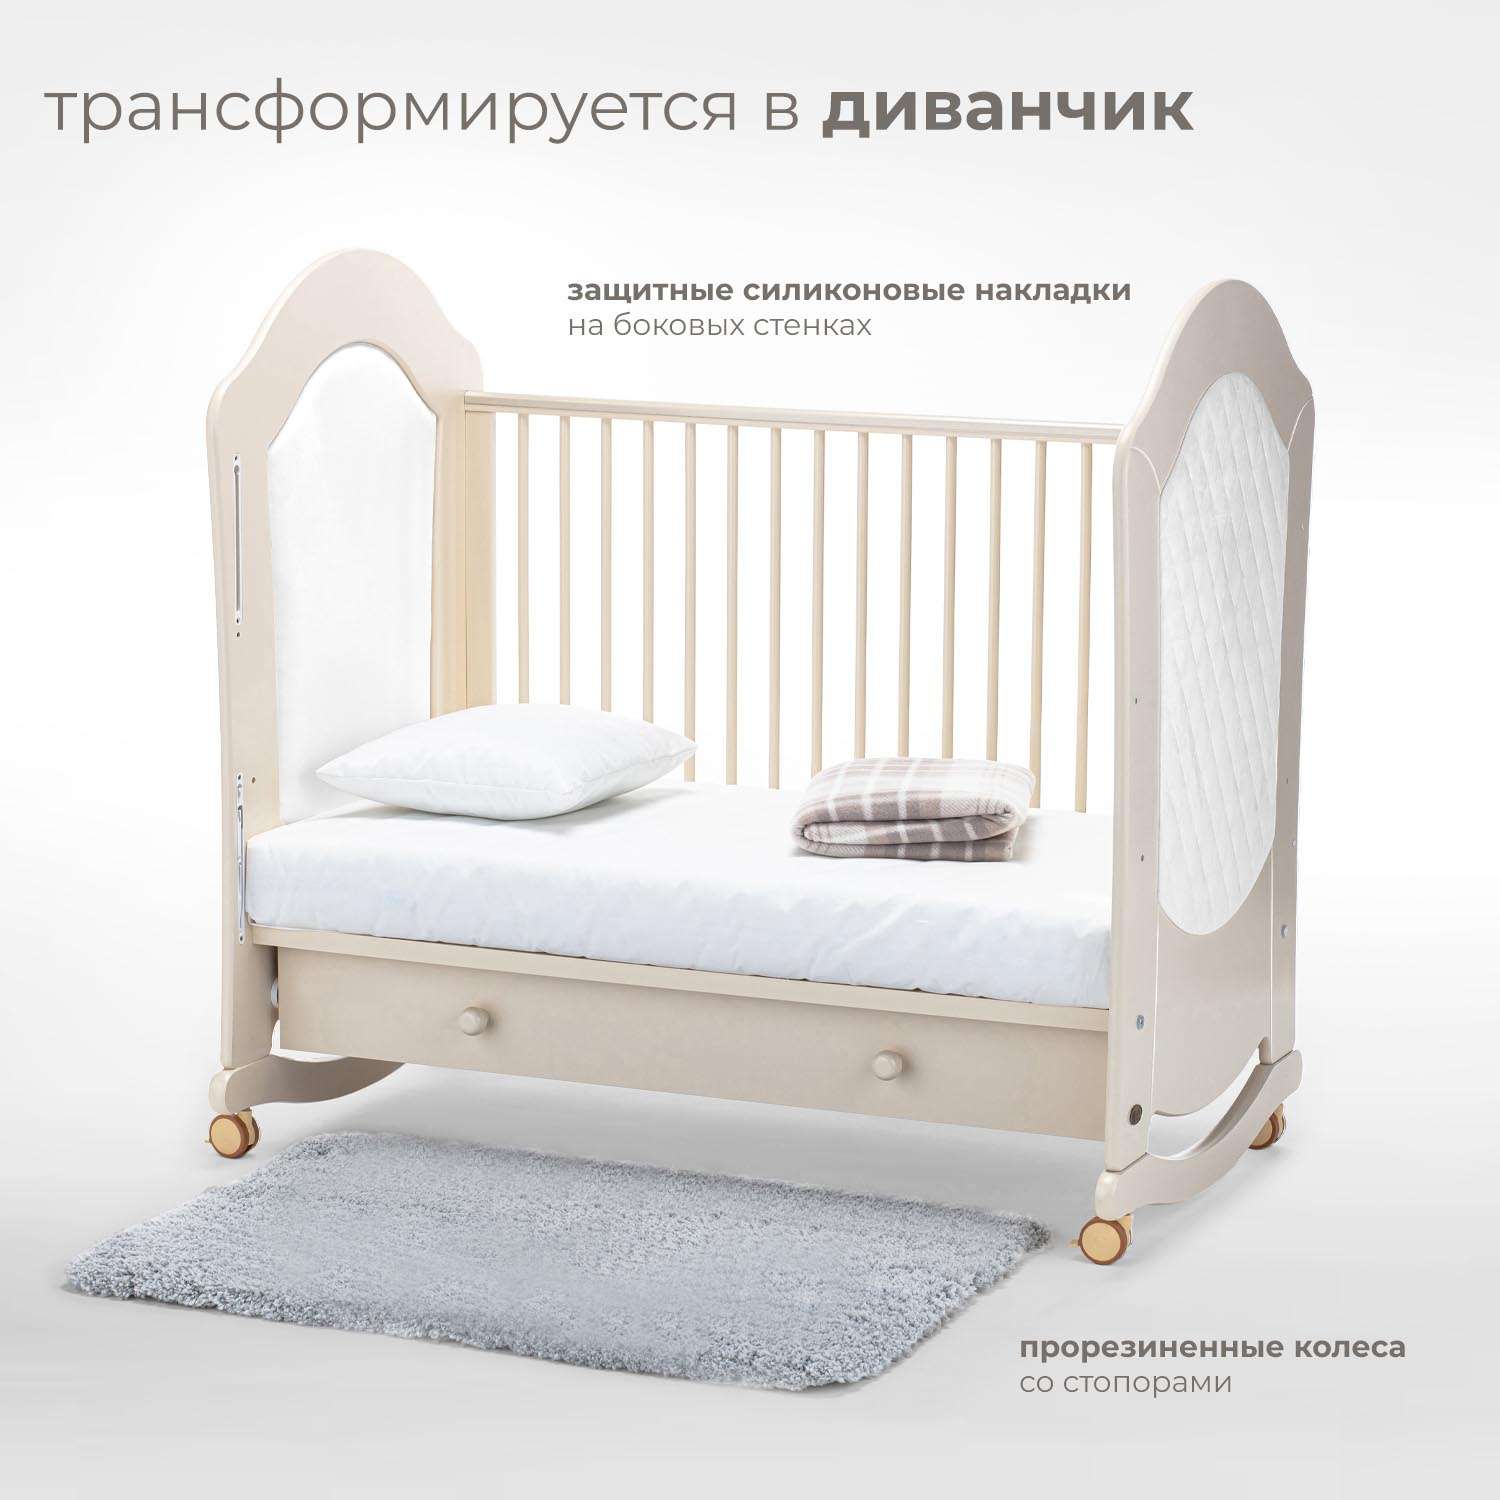 Детская кроватка Nuovita Tempi dondolo прямоугольная, (слоновая кость) - фото 5